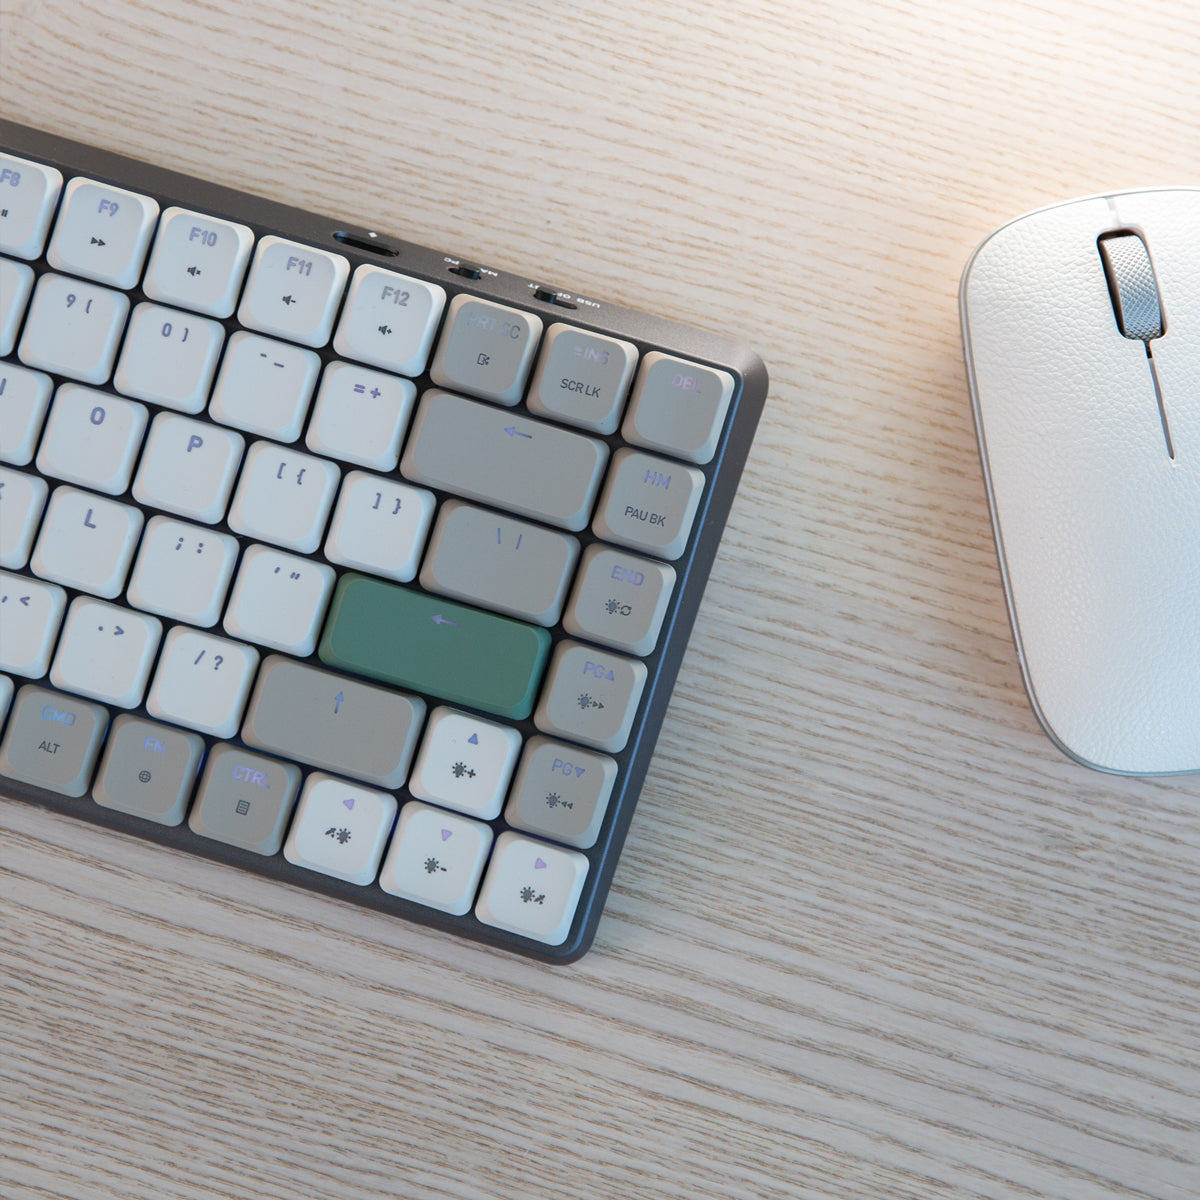 لوحة مفاتيح Cascade رفيعة قابلة للتبديل السريع بنسبة 75% - أكتوبر